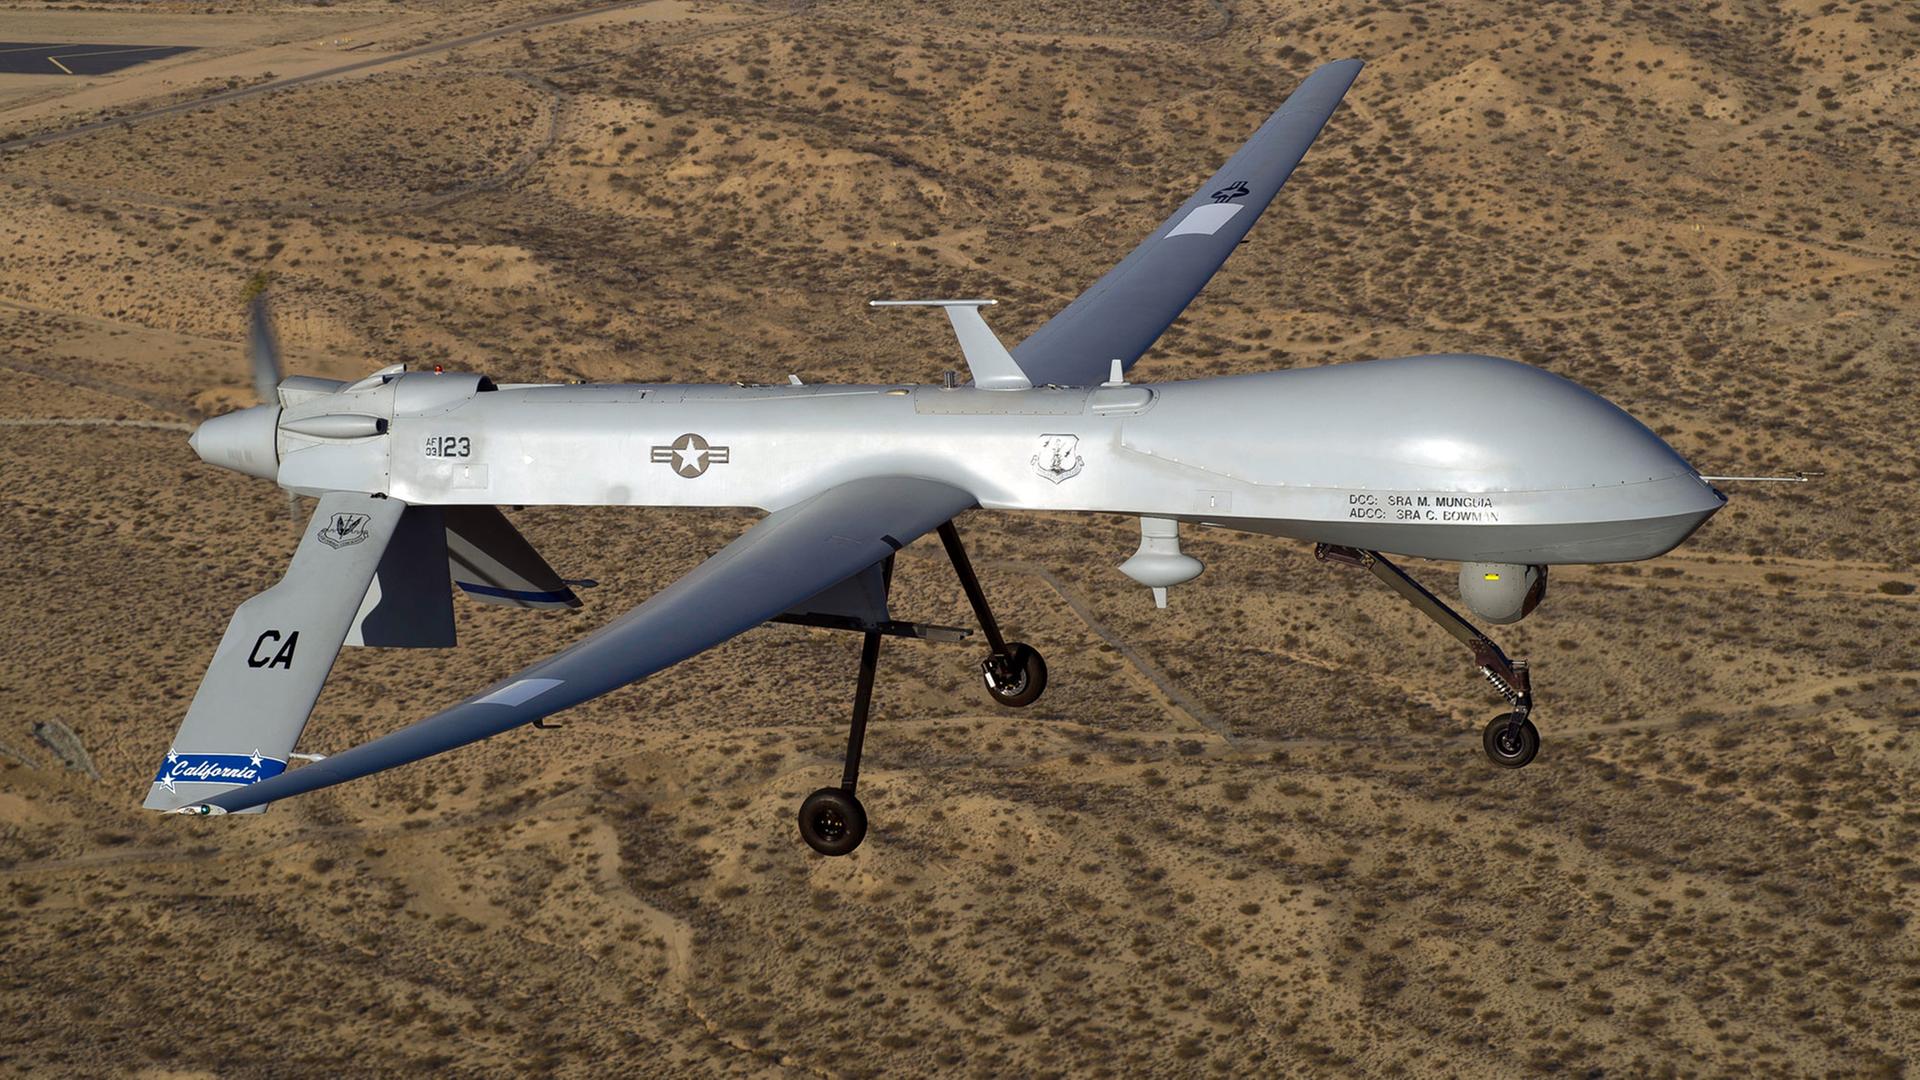 Drohnen über Pakistan - Umstrittene Waffen im Kampf gegen Terror